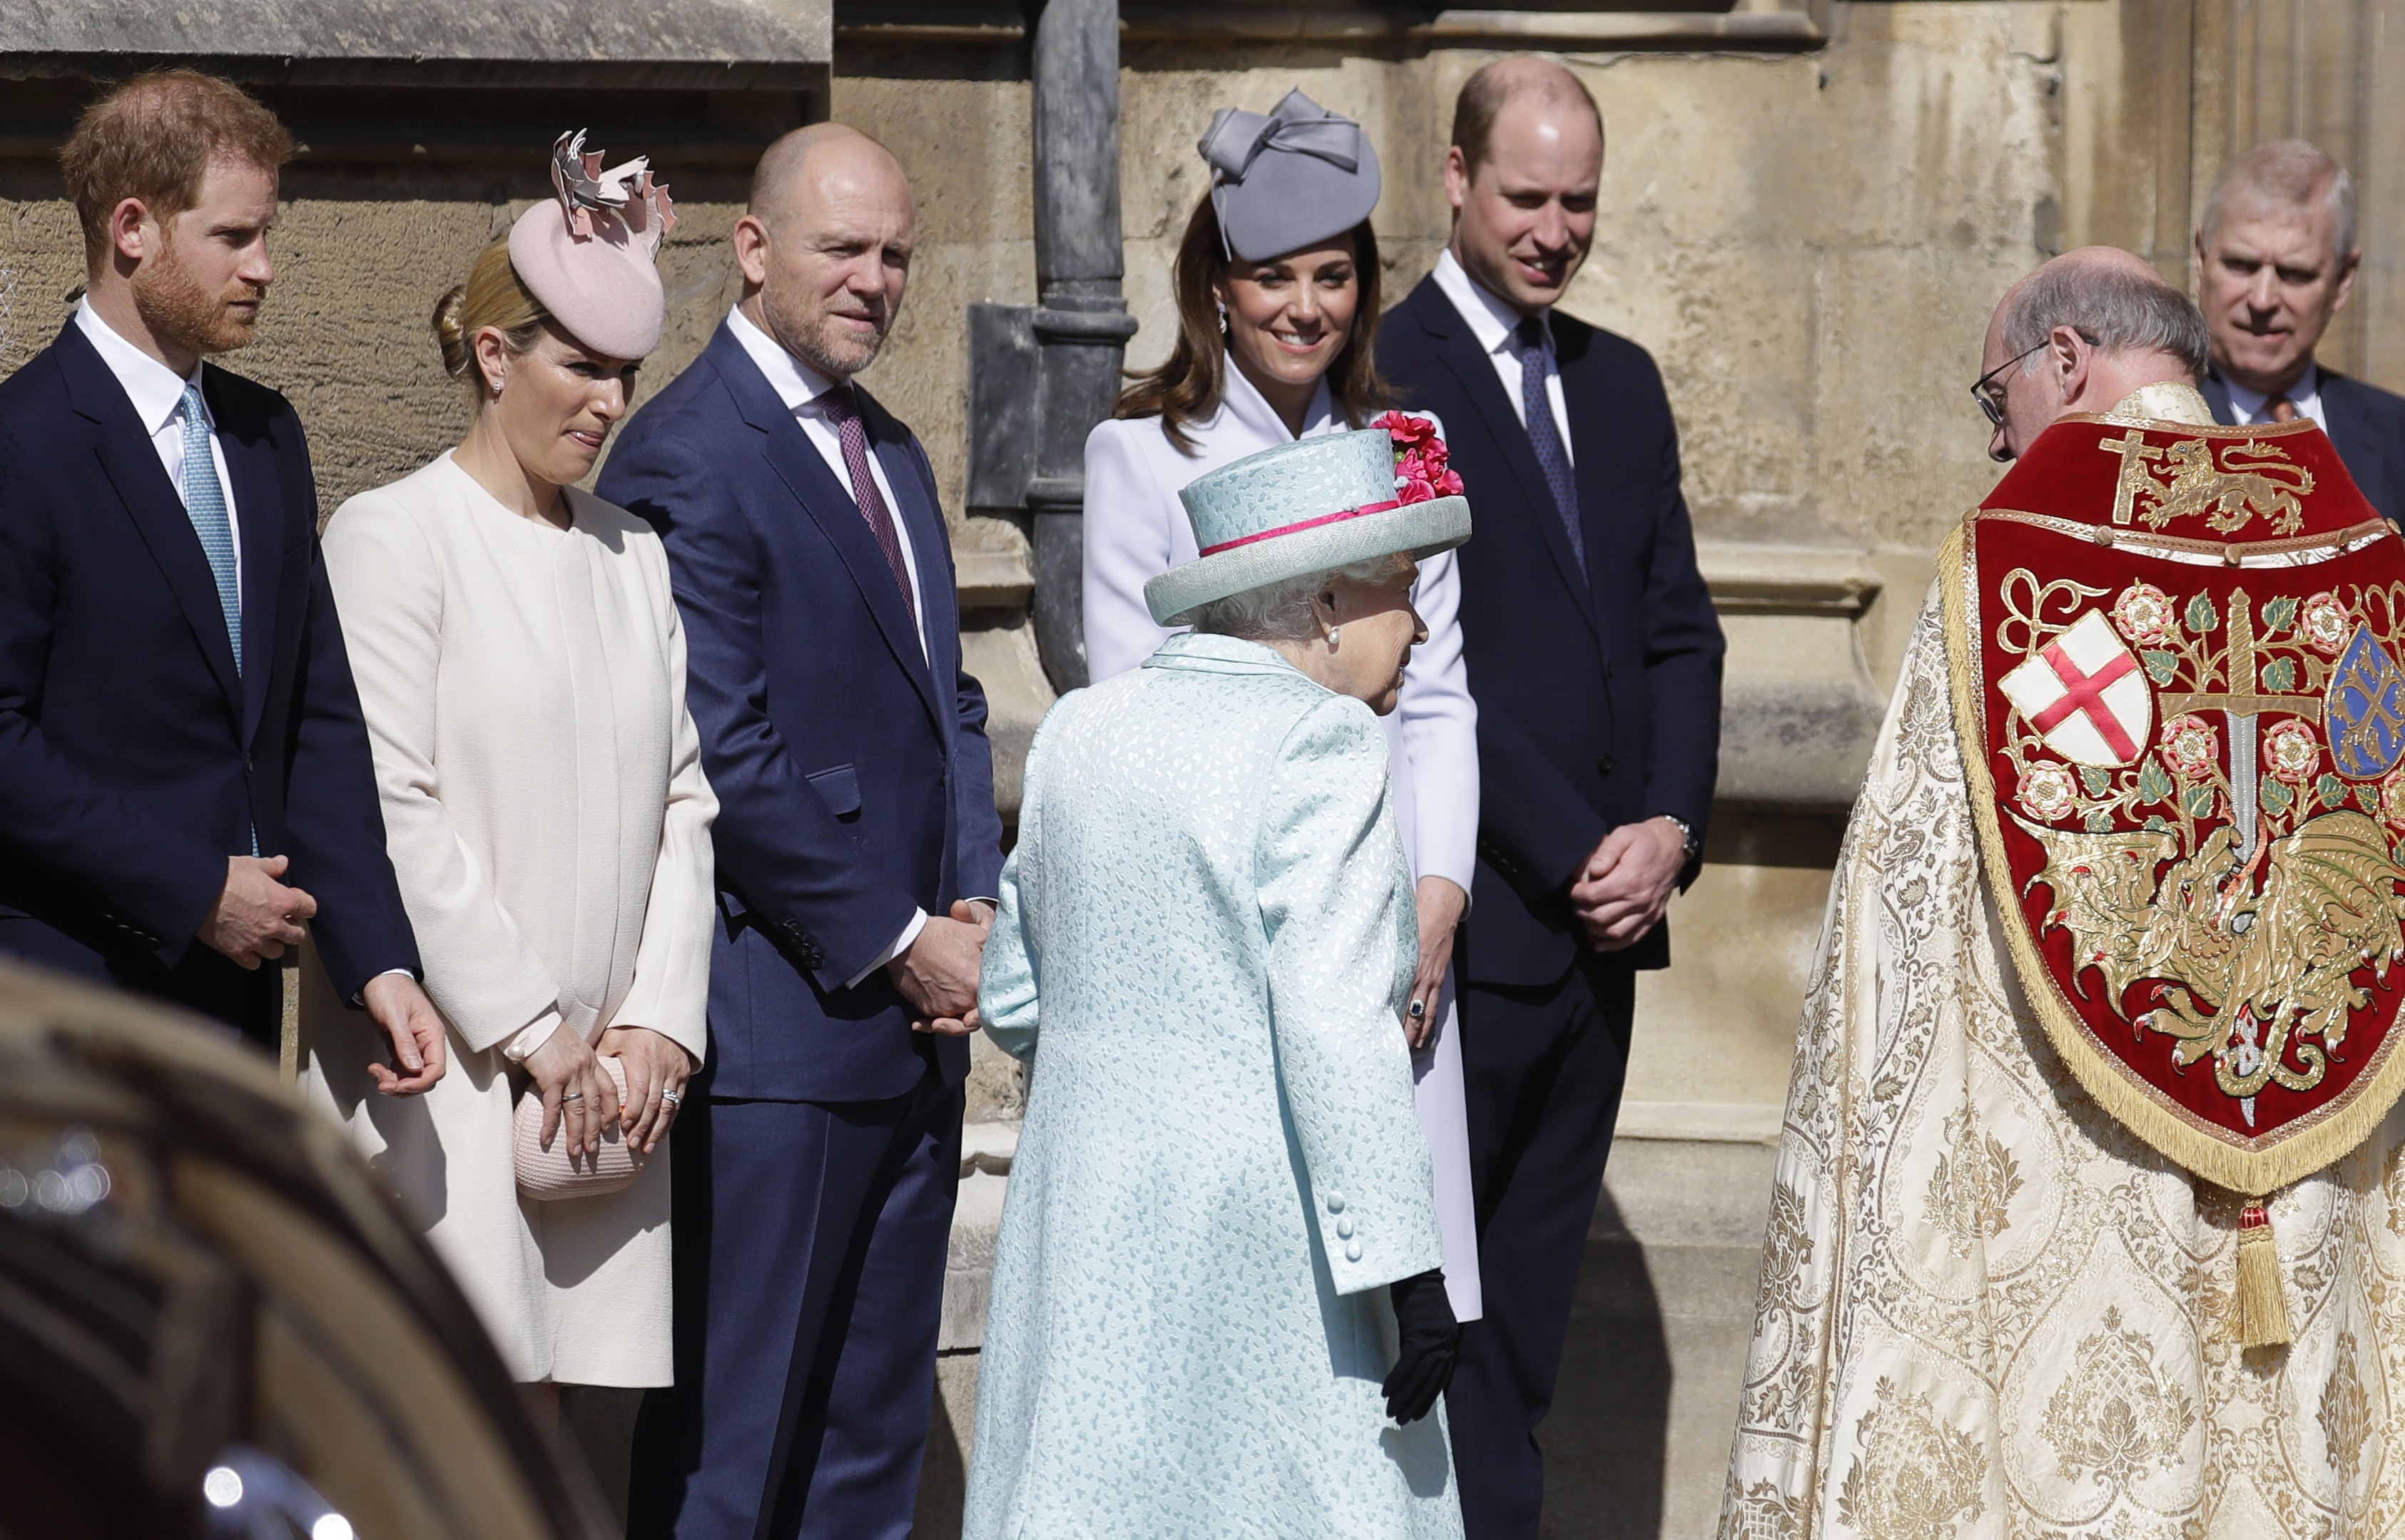 O Príncipe Harry sem a companhia da esposa, a atriz e duquesa Meghan Markle, na missa de Páscoa da Família Real Britânica, com a presença de primos, da Rainha e do irmão William com a esposa Kate Middleton (Foto: Getty Images)